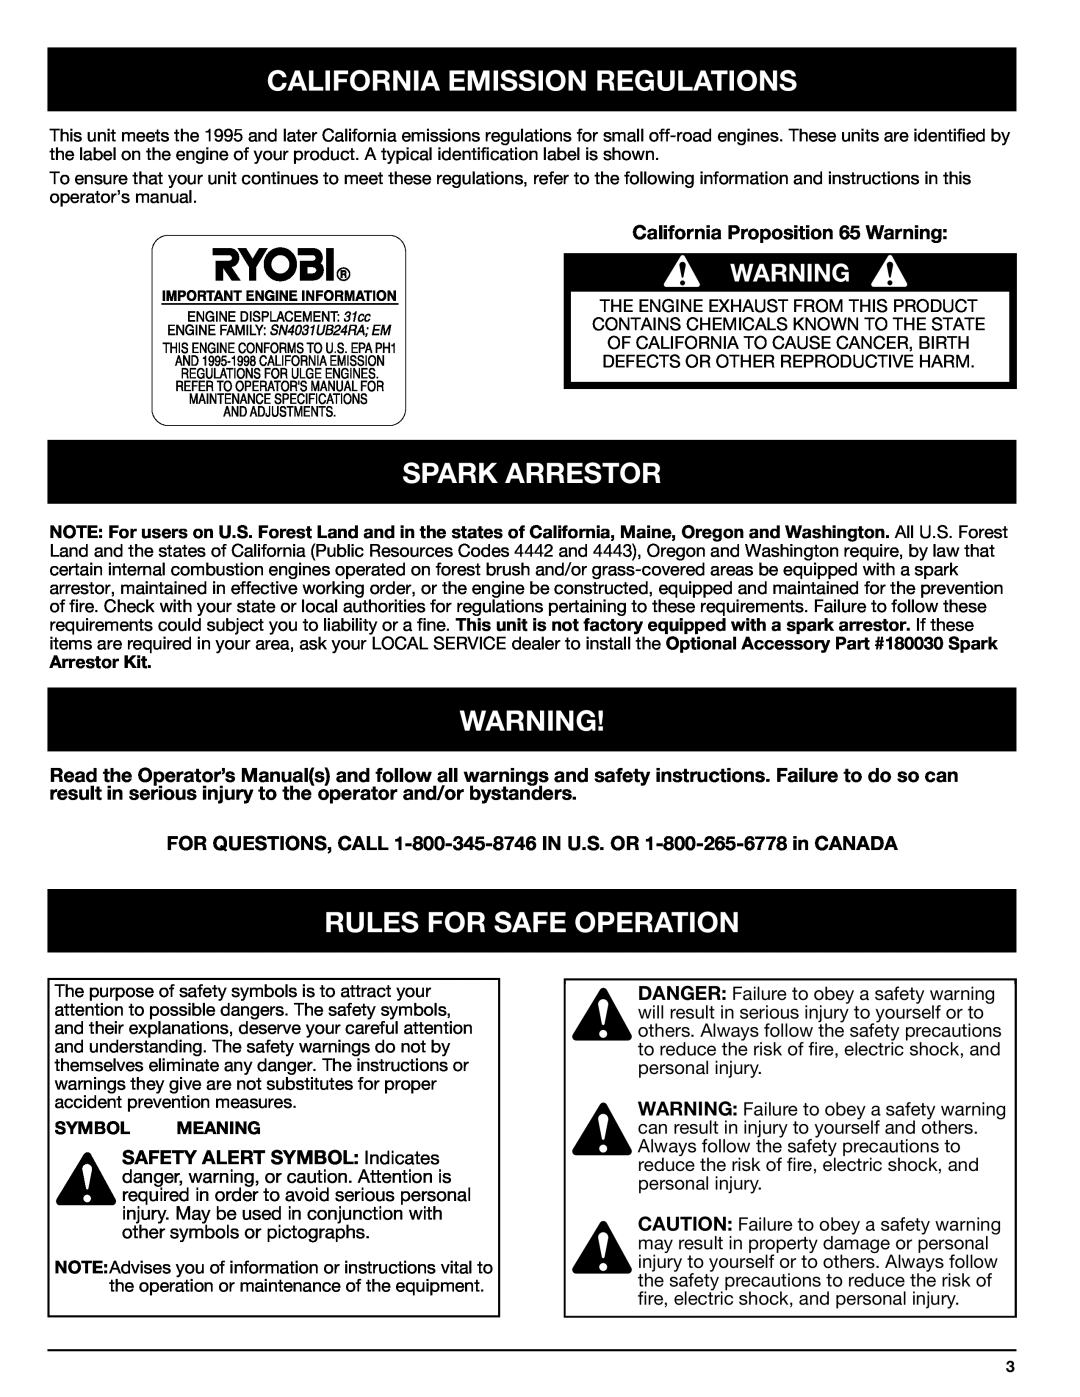 Ryobi 767rj manual California Emission Regulations, Spark Arrestor, Rules For Safe Operation 